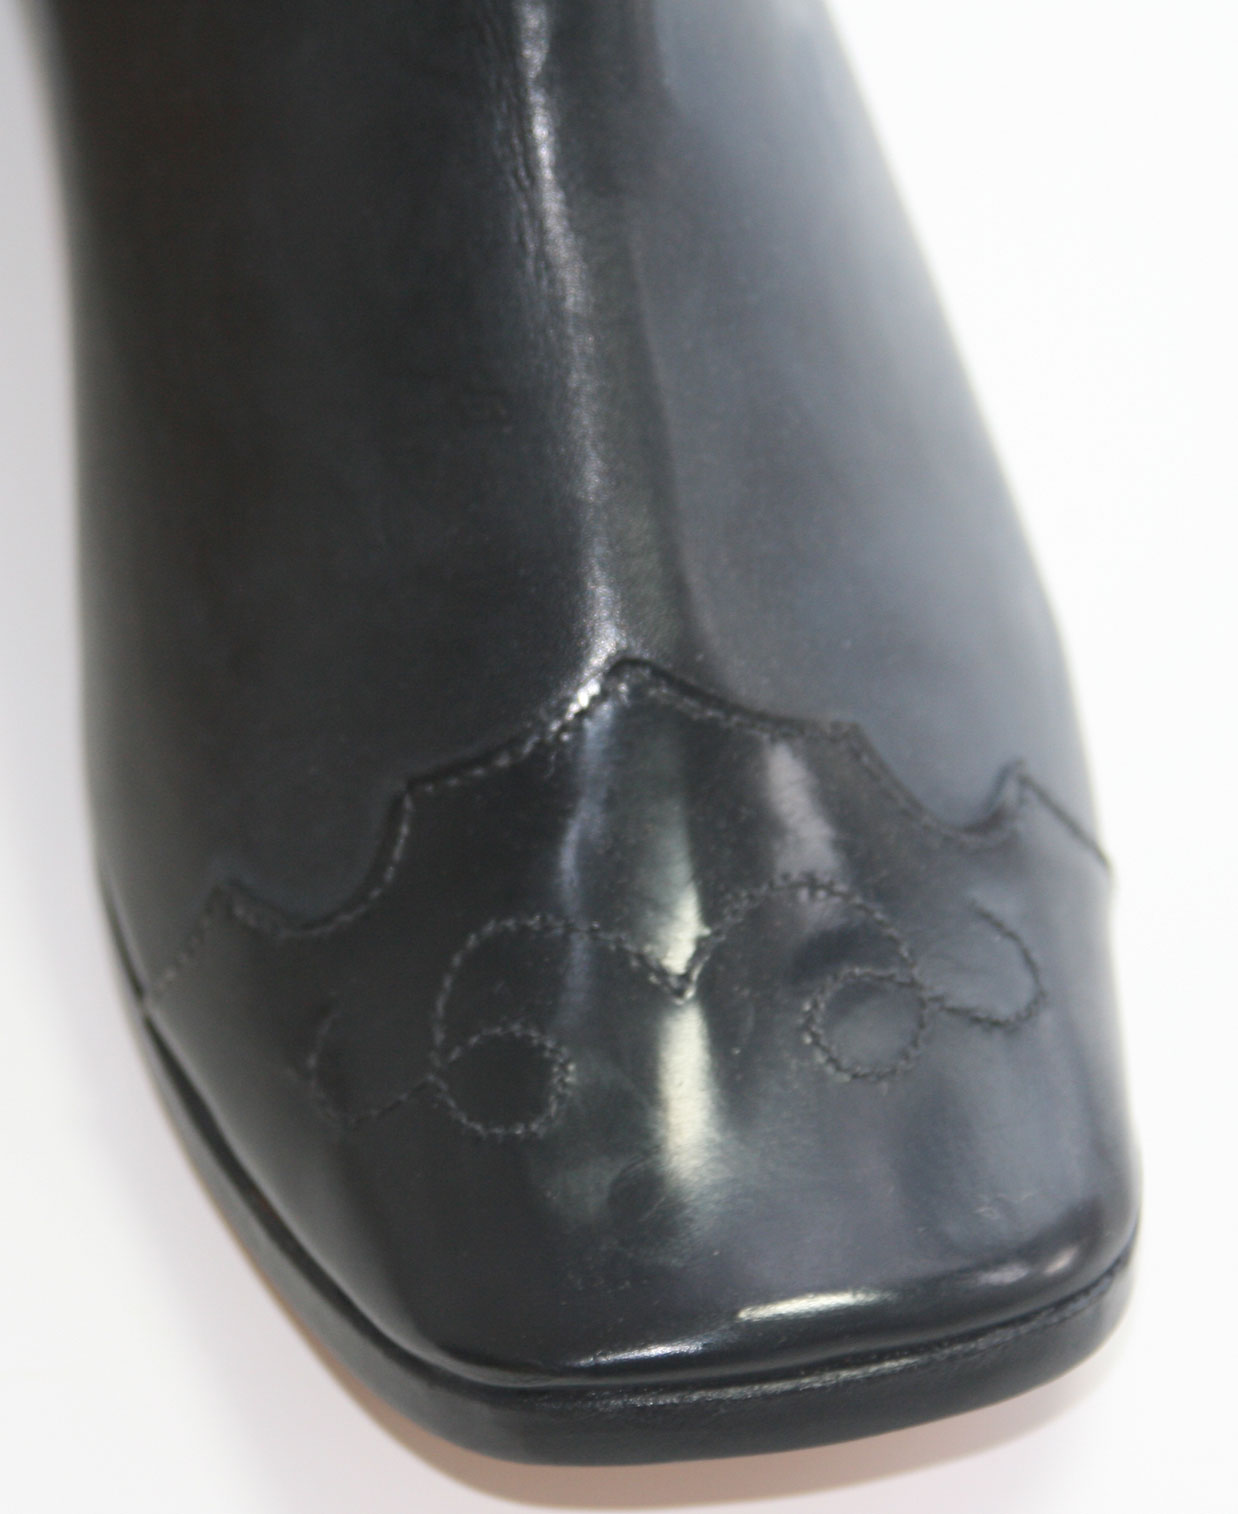 Patent leather toe cap